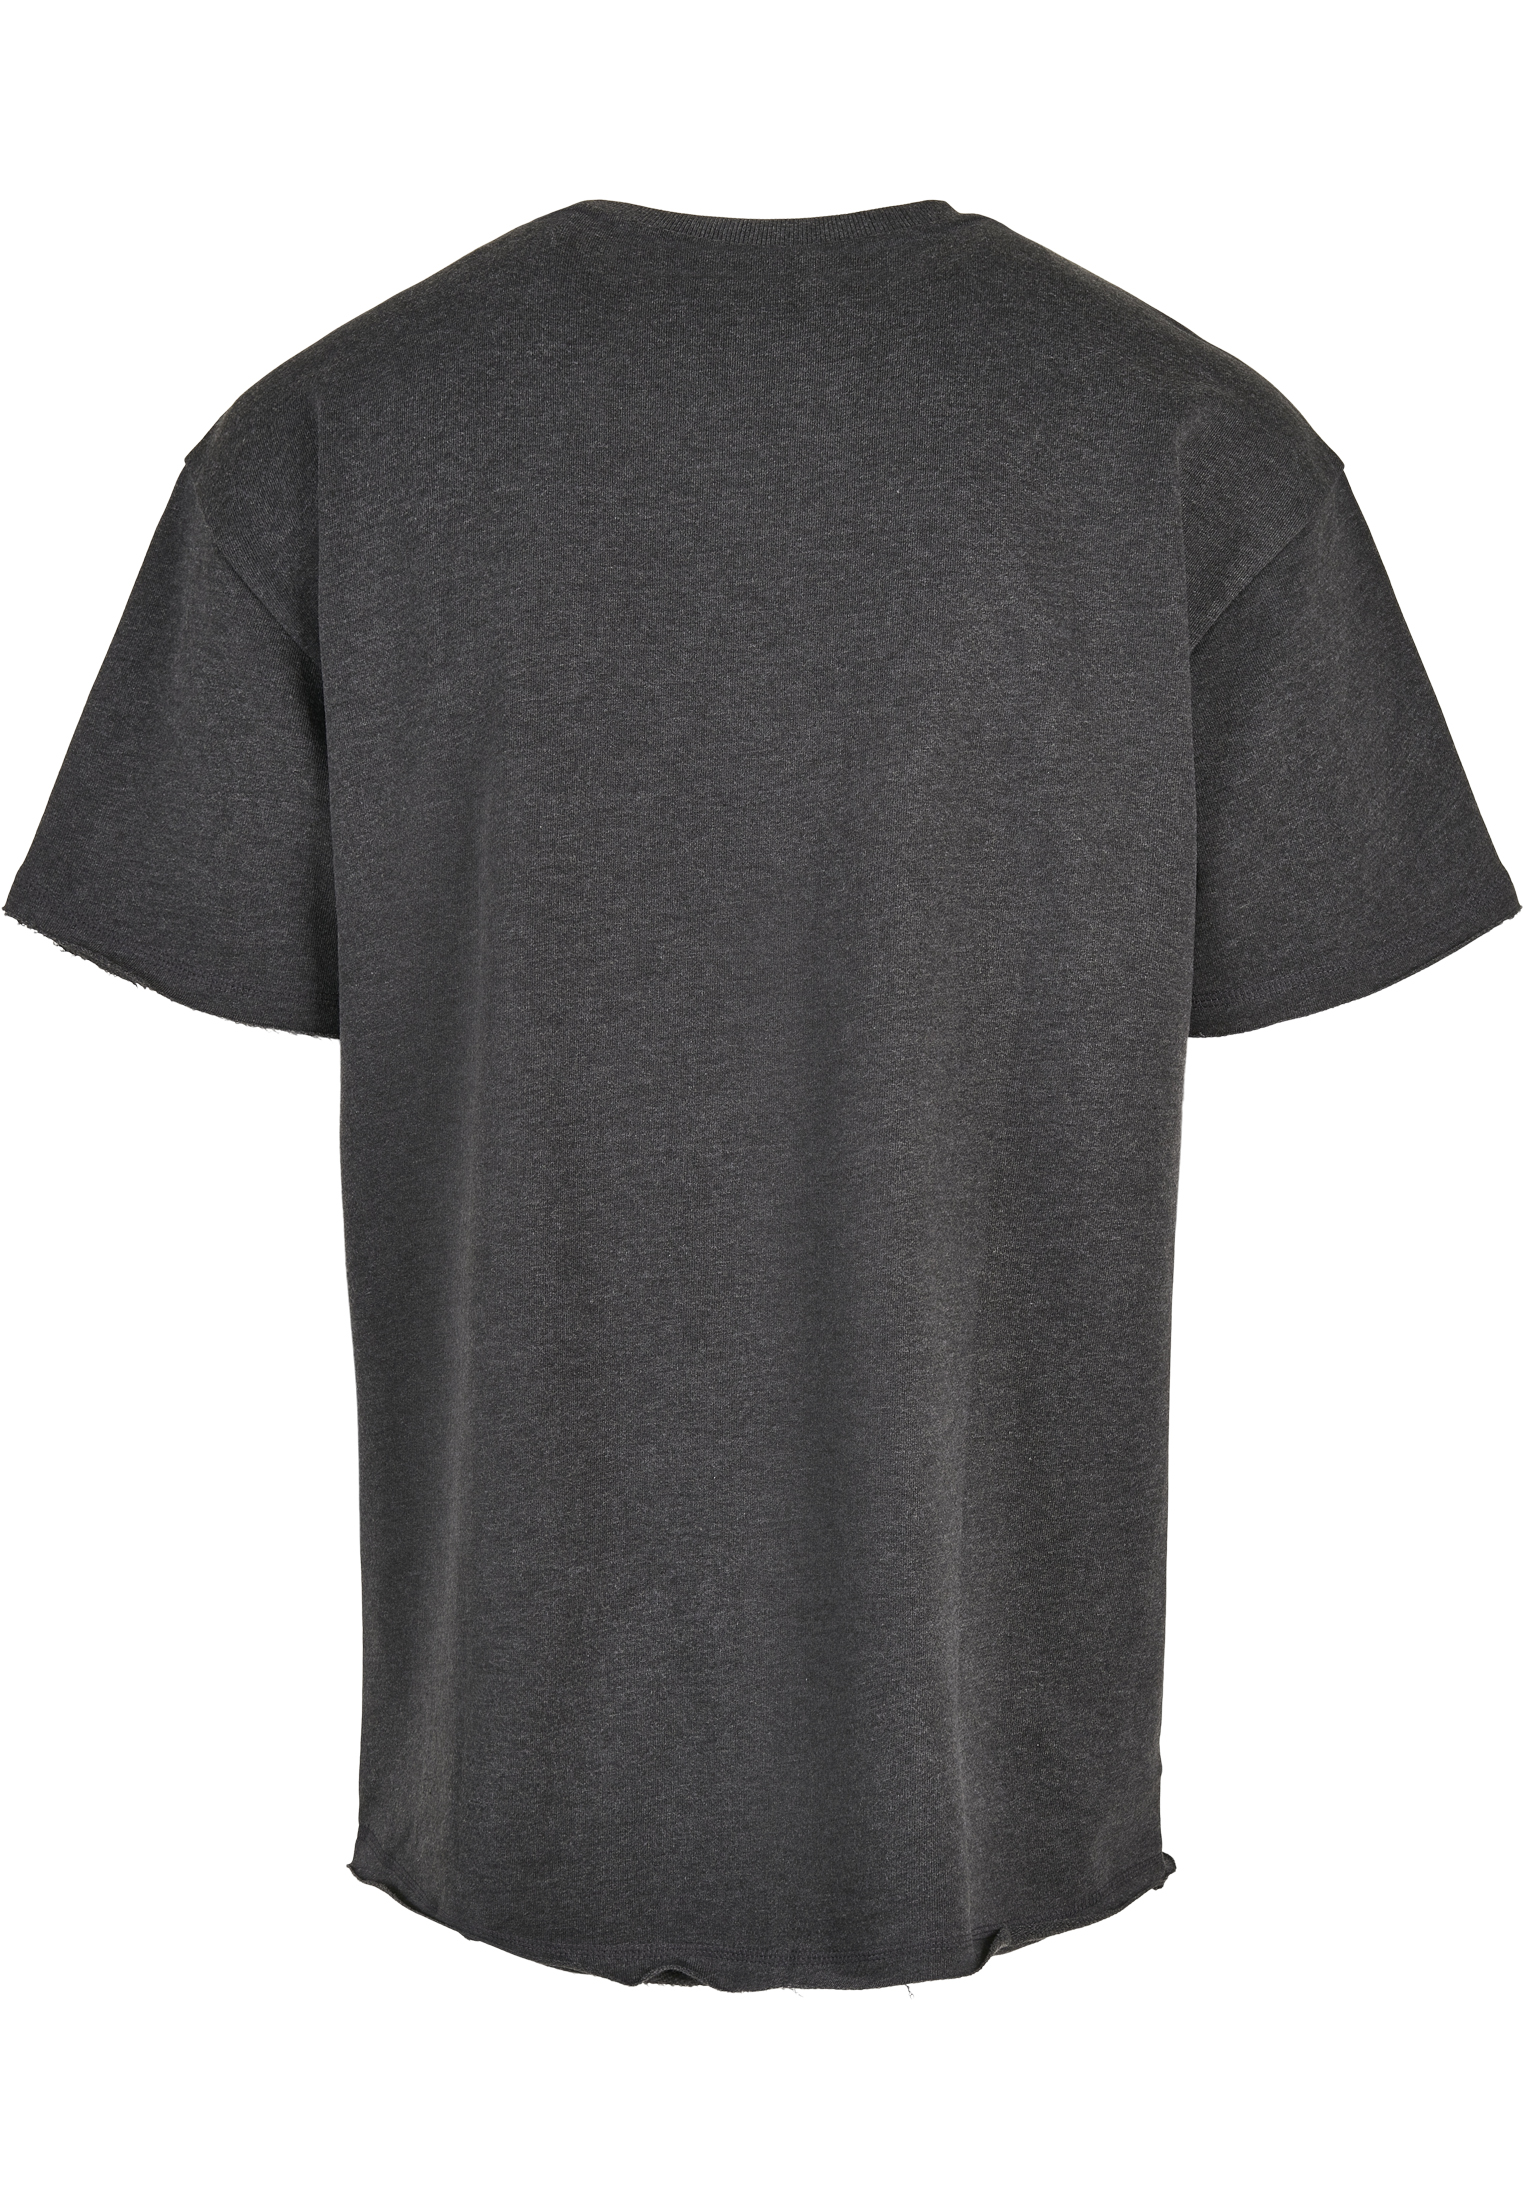 T-Shirts Herringbone?Terry Tee in Farbe charcoal